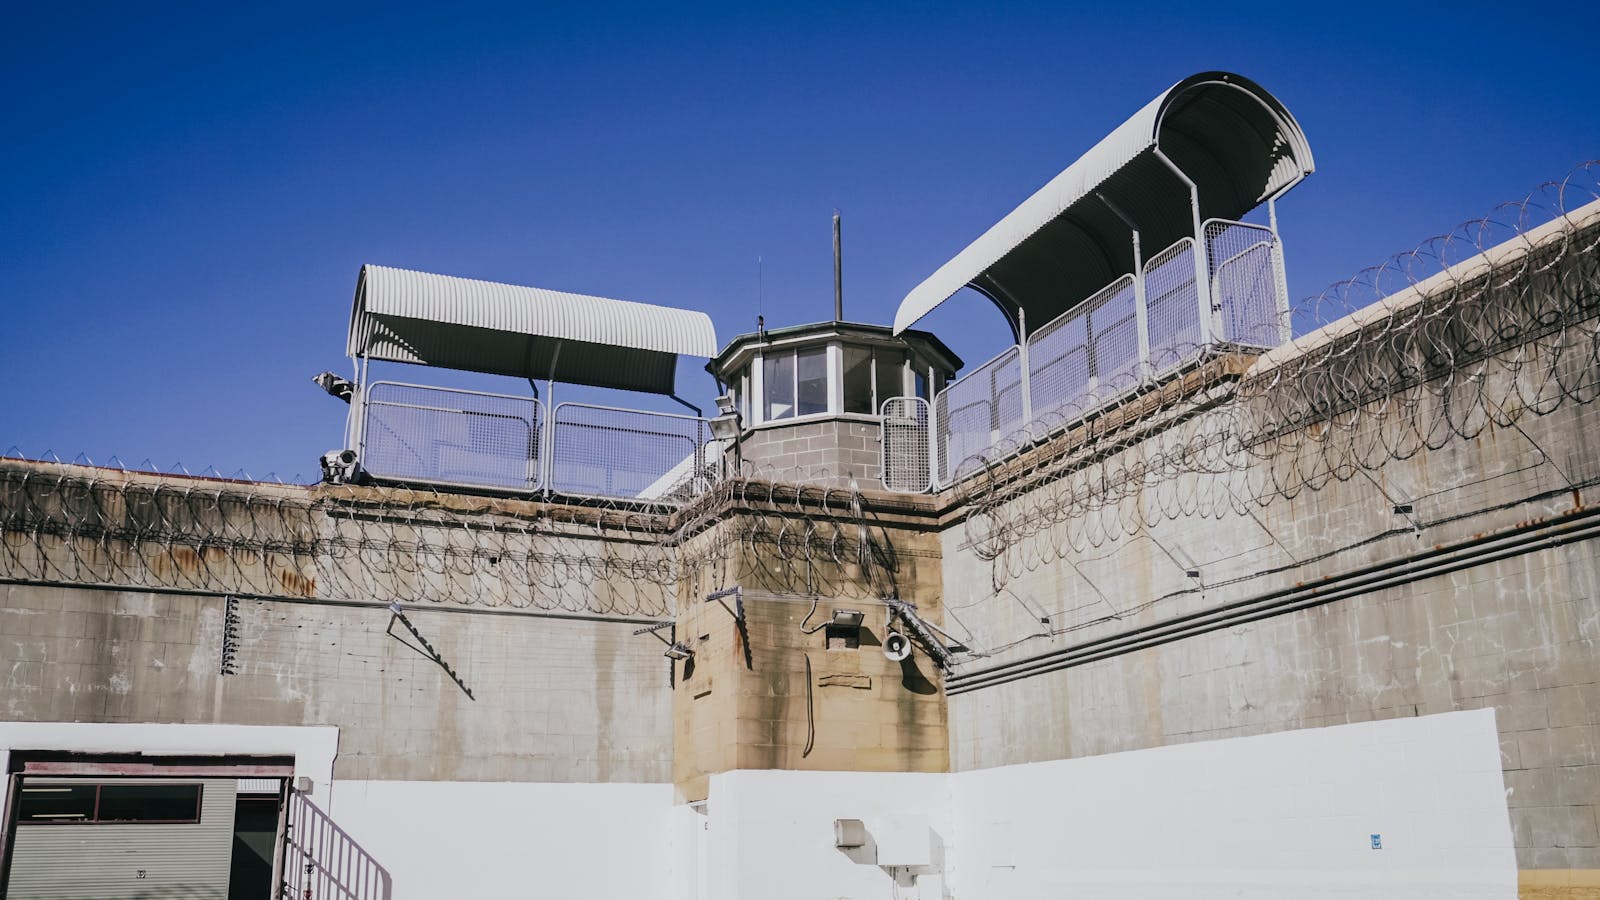 The Guard Tower at Maitland Gaol